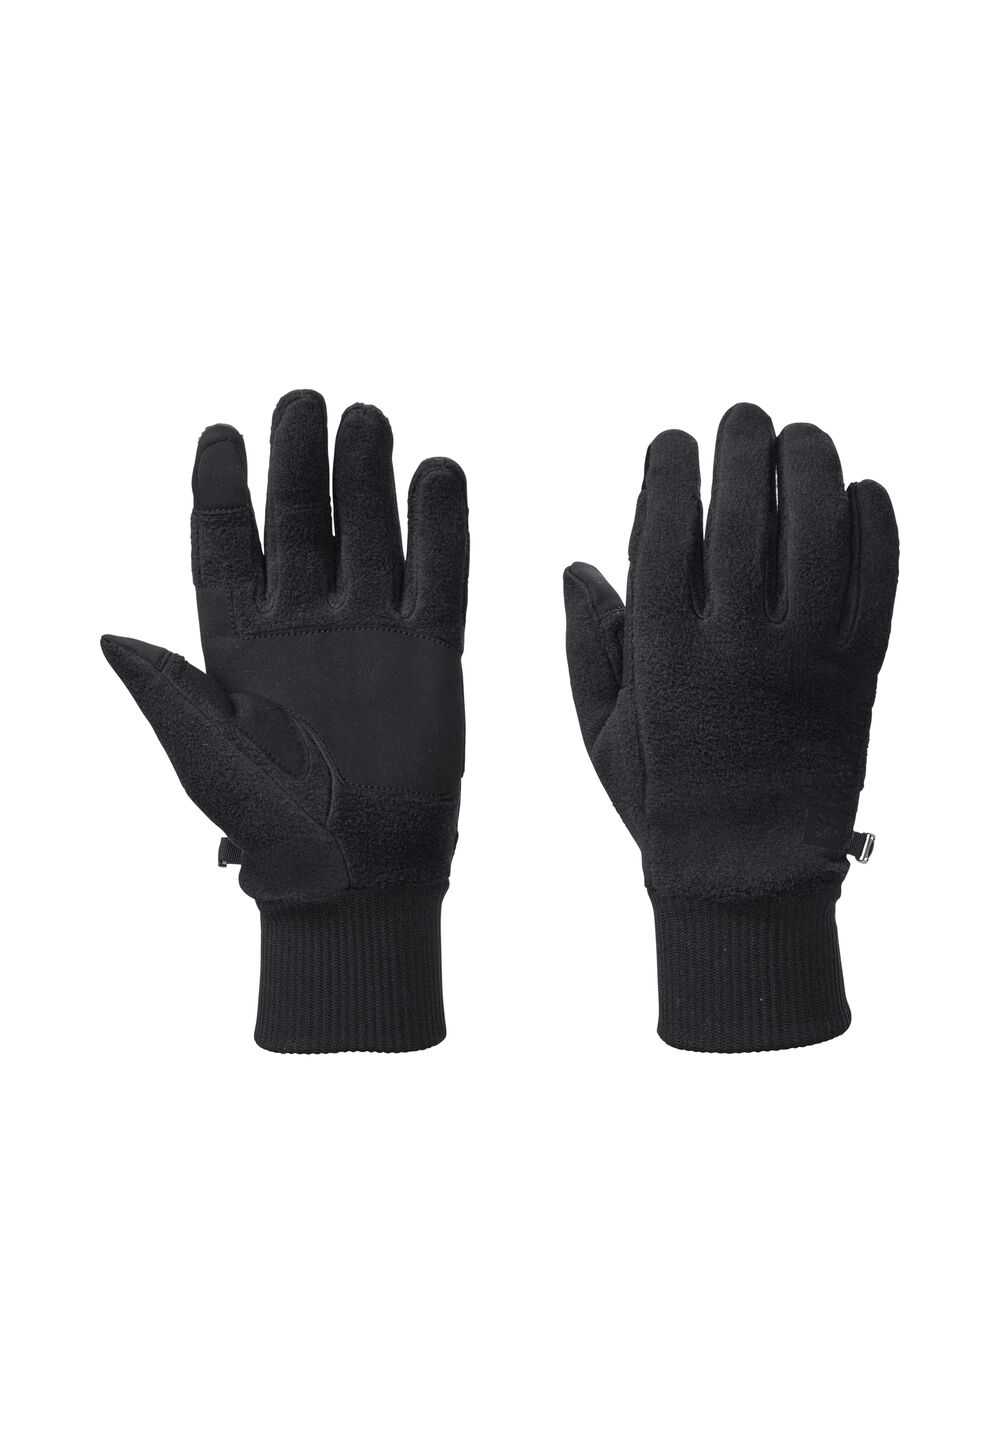 Jack Wolfskin Vertigo Glove Fleece handschoenen XL zwart black